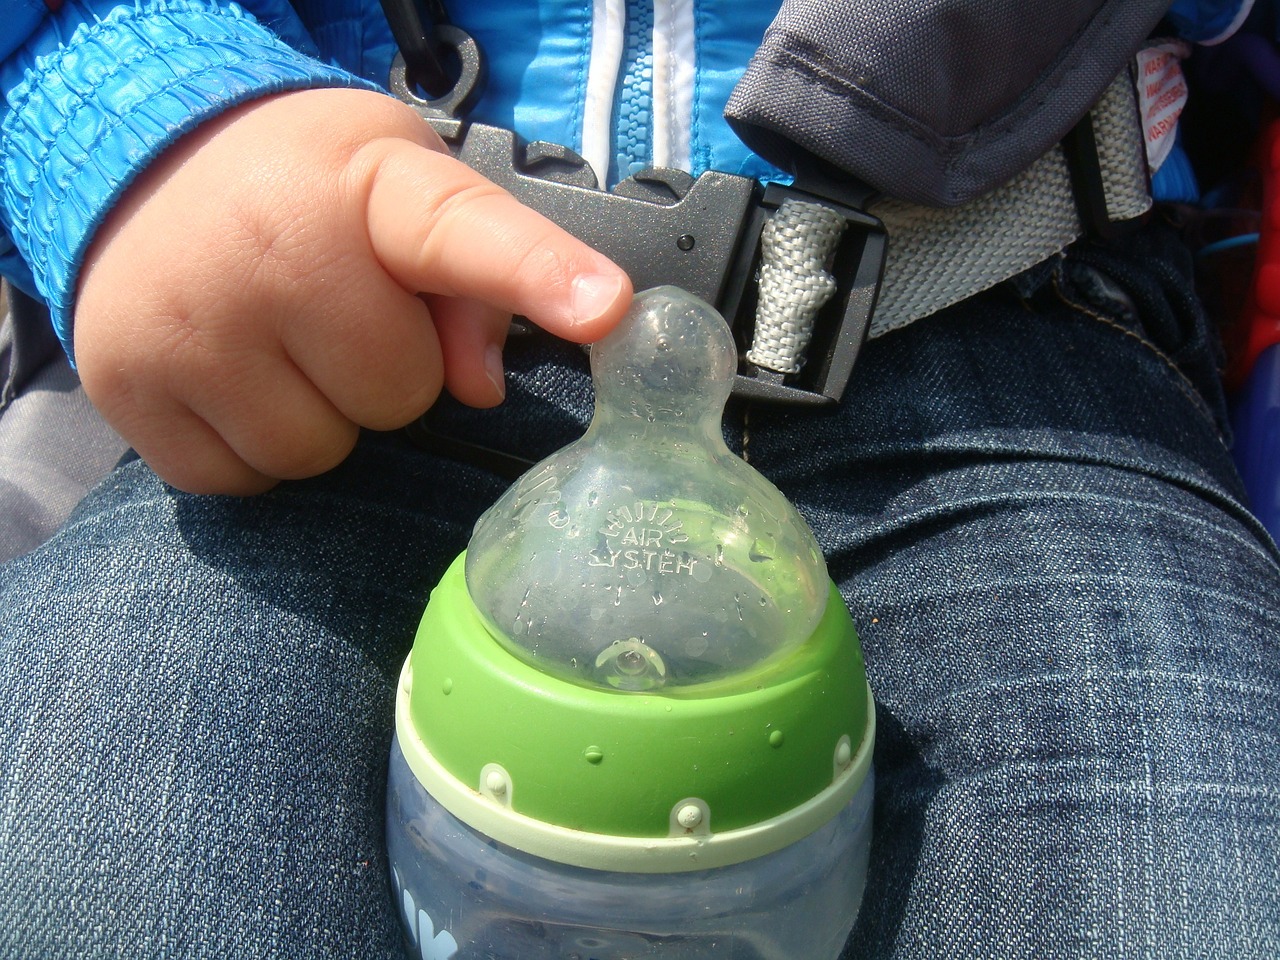 【SHINE+】赤ちゃんがそのまま飲めるウォーターサーバーの水はro水？